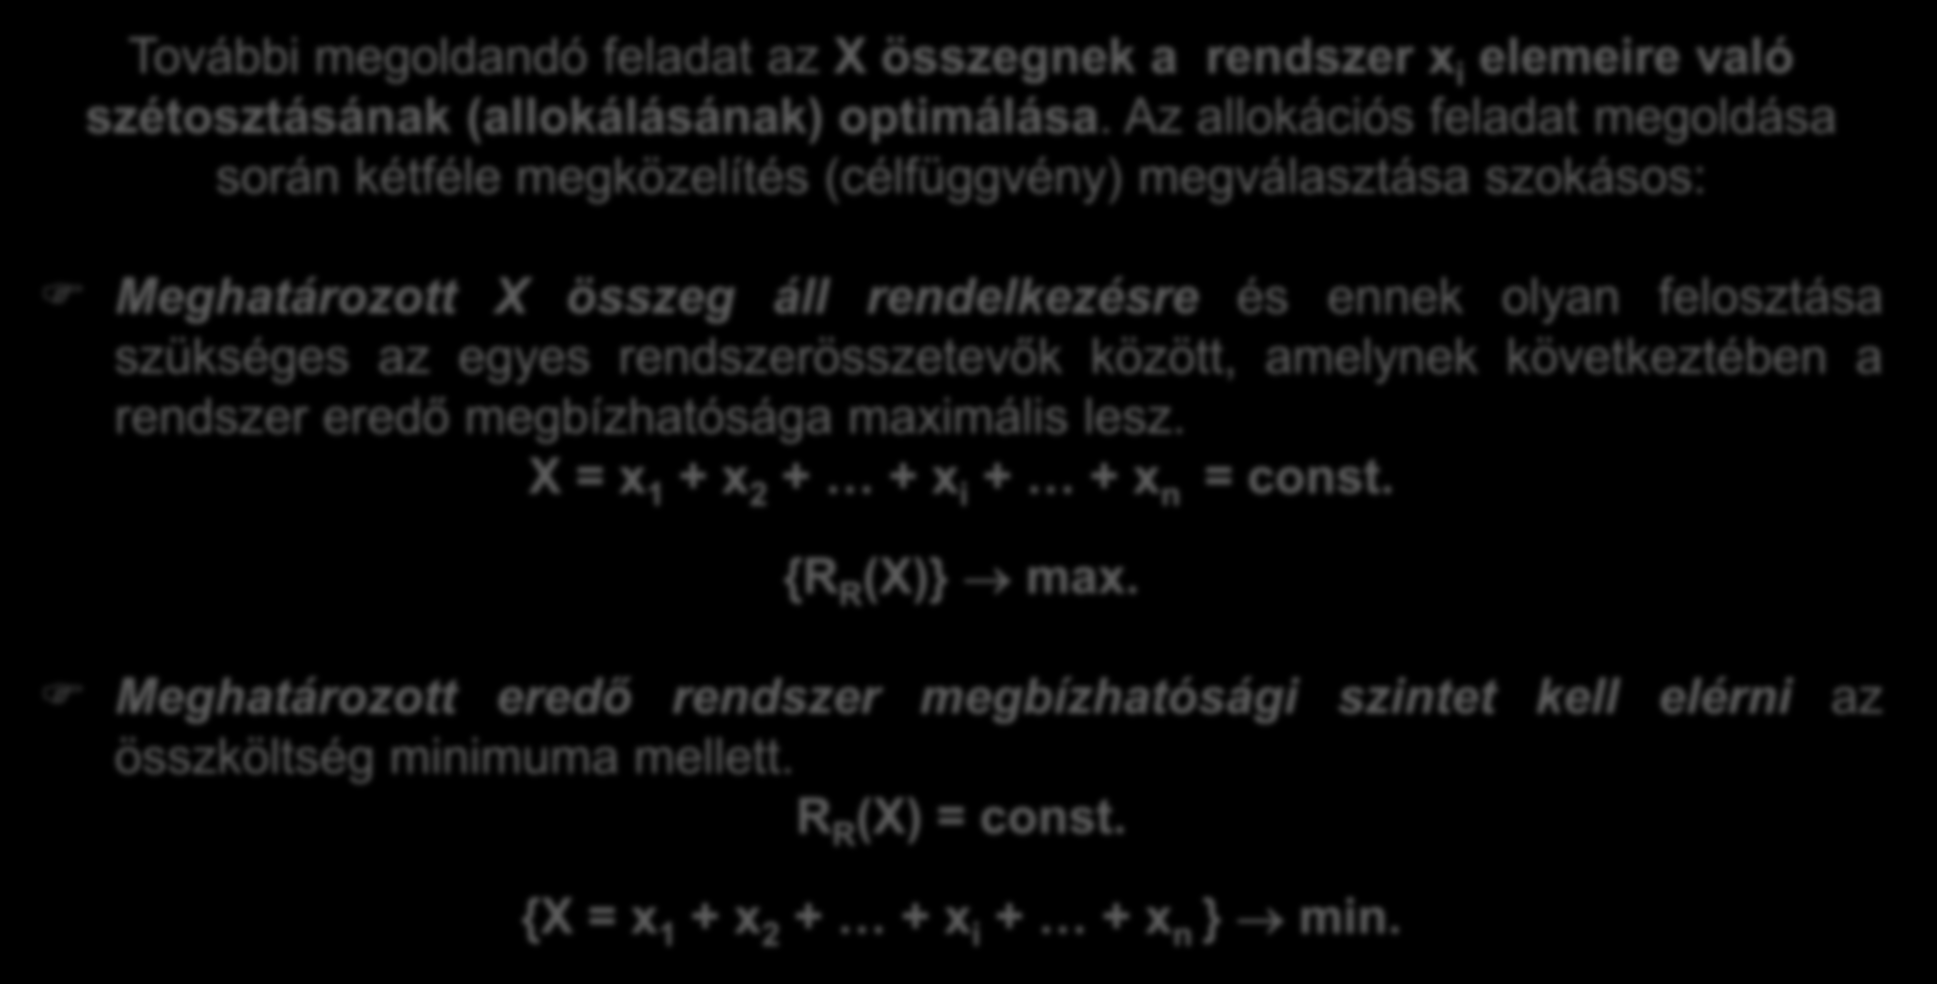 Megbízhaóság-kölség összefüggés. További megoldandó felada az X összegnek a rendszer x i elemeire való széoszásának (allokálásának) opimálása.